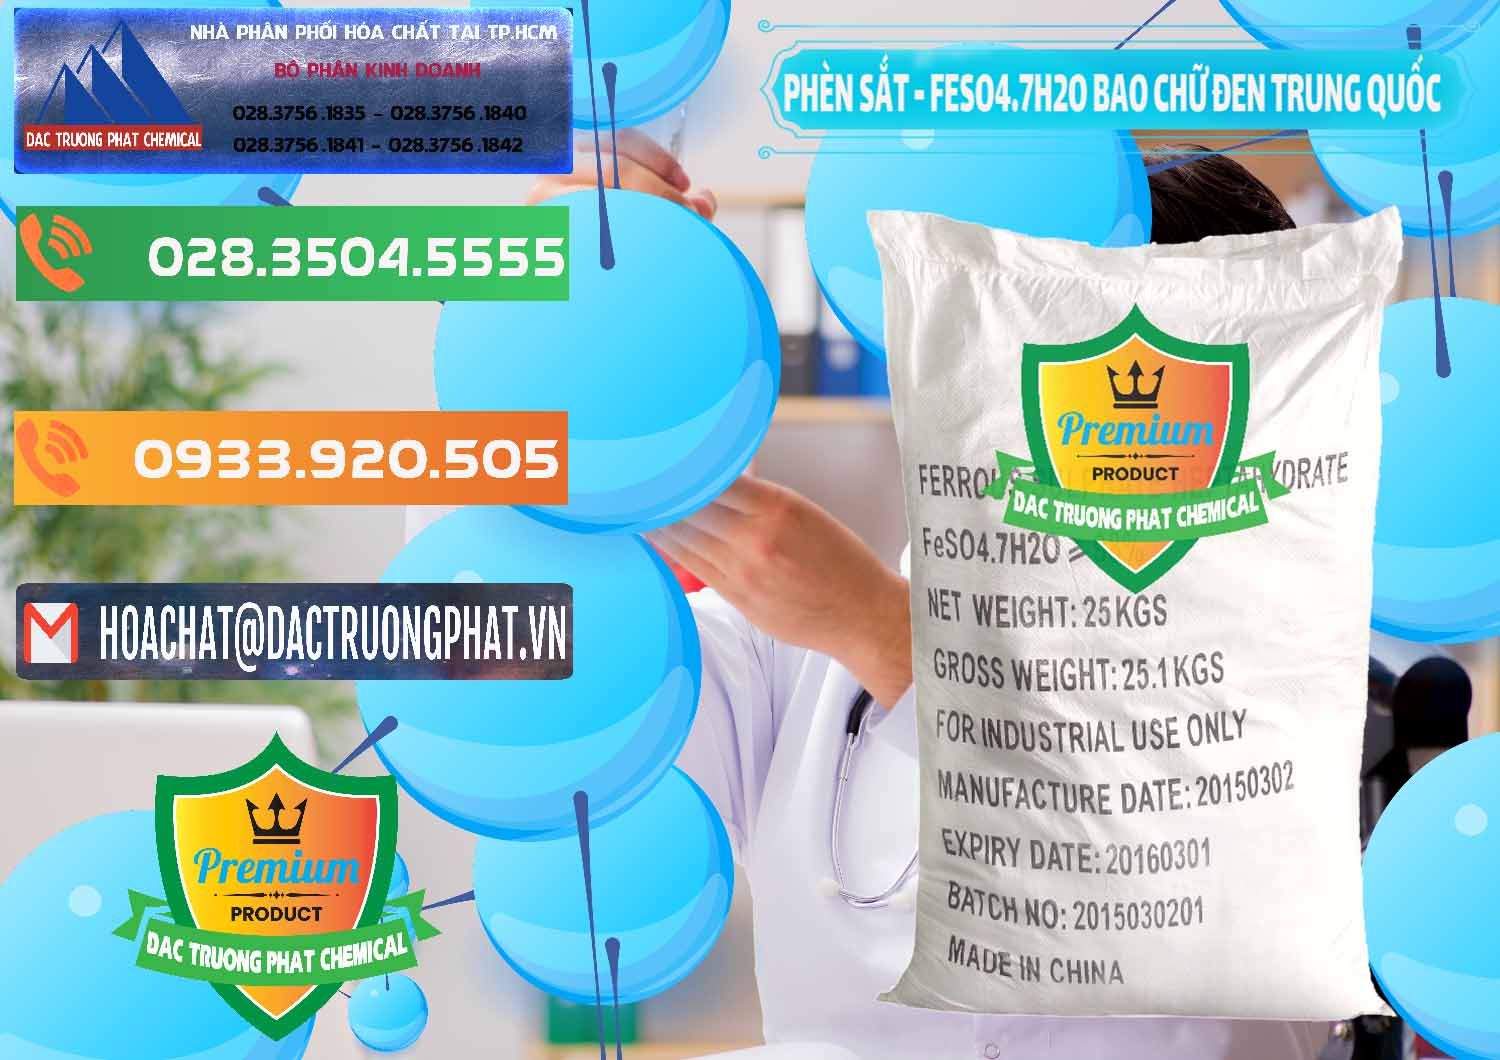 Chuyên phân phối & bán Phèn Sắt - FeSO4.7H2O Bao Chữ Đen Trung Quốc China - 0234 - Nơi cung cấp ( phân phối ) hóa chất tại TP.HCM - hoachatxulynuoc.com.vn